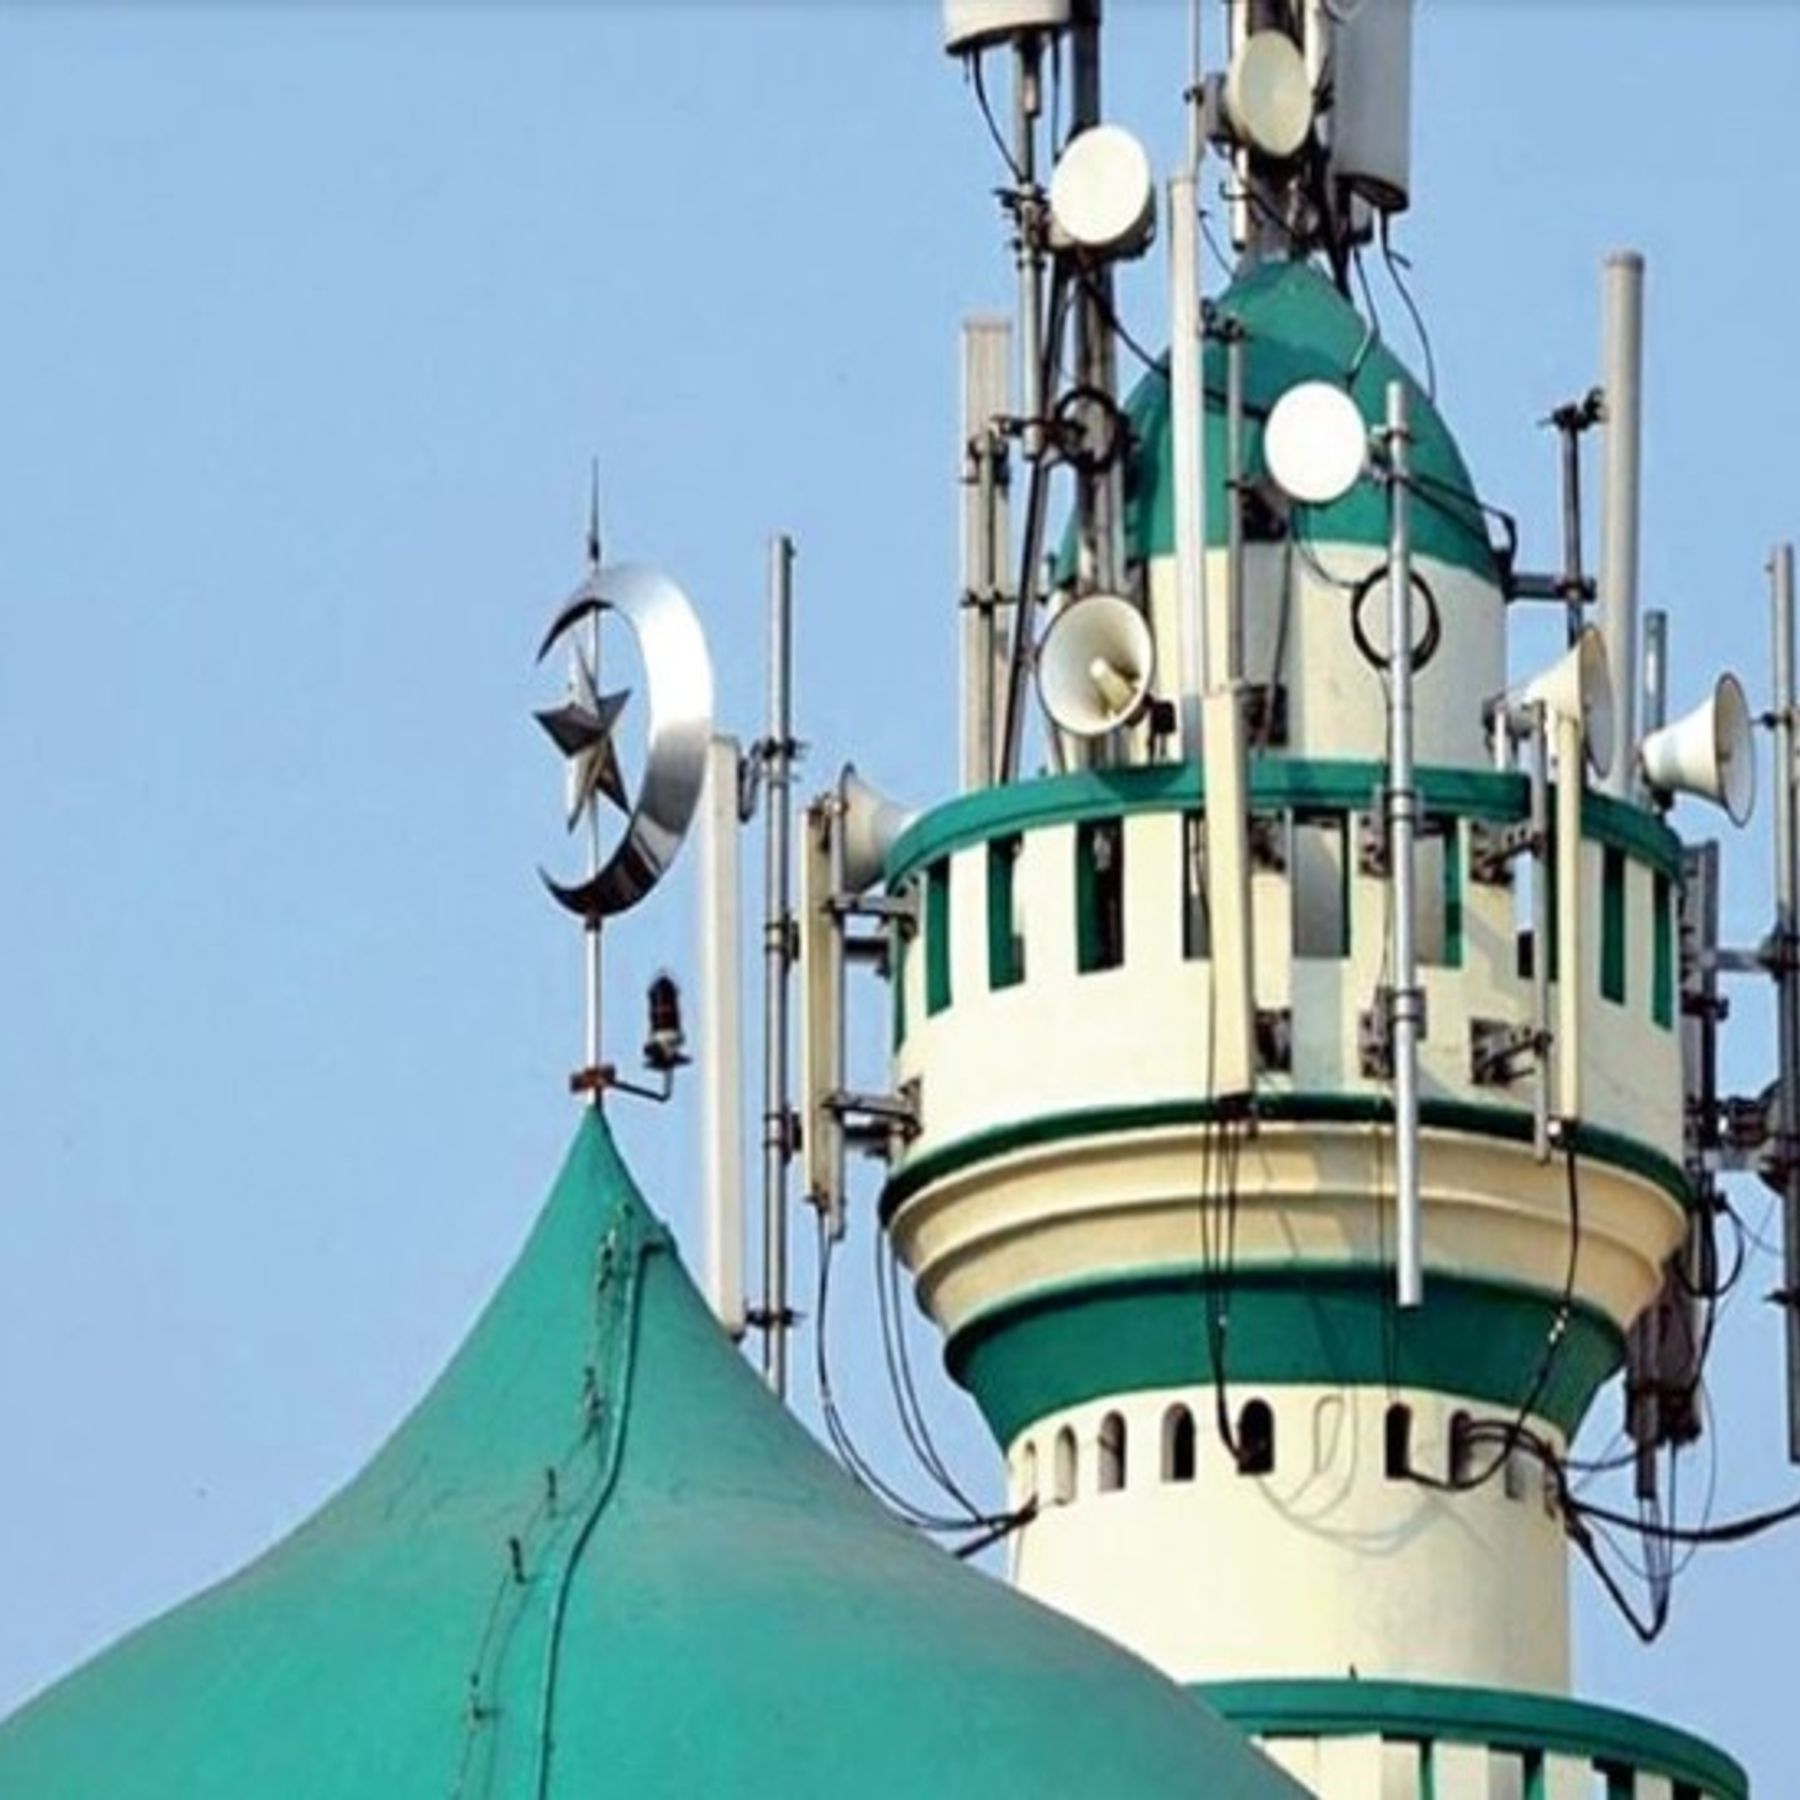 Loud Speakers : सऊदी अरब में सिर्फ अजान के समय बजेंगे मस्जिदों के लाउड स्पीकर, सख्त नियमावली जारी